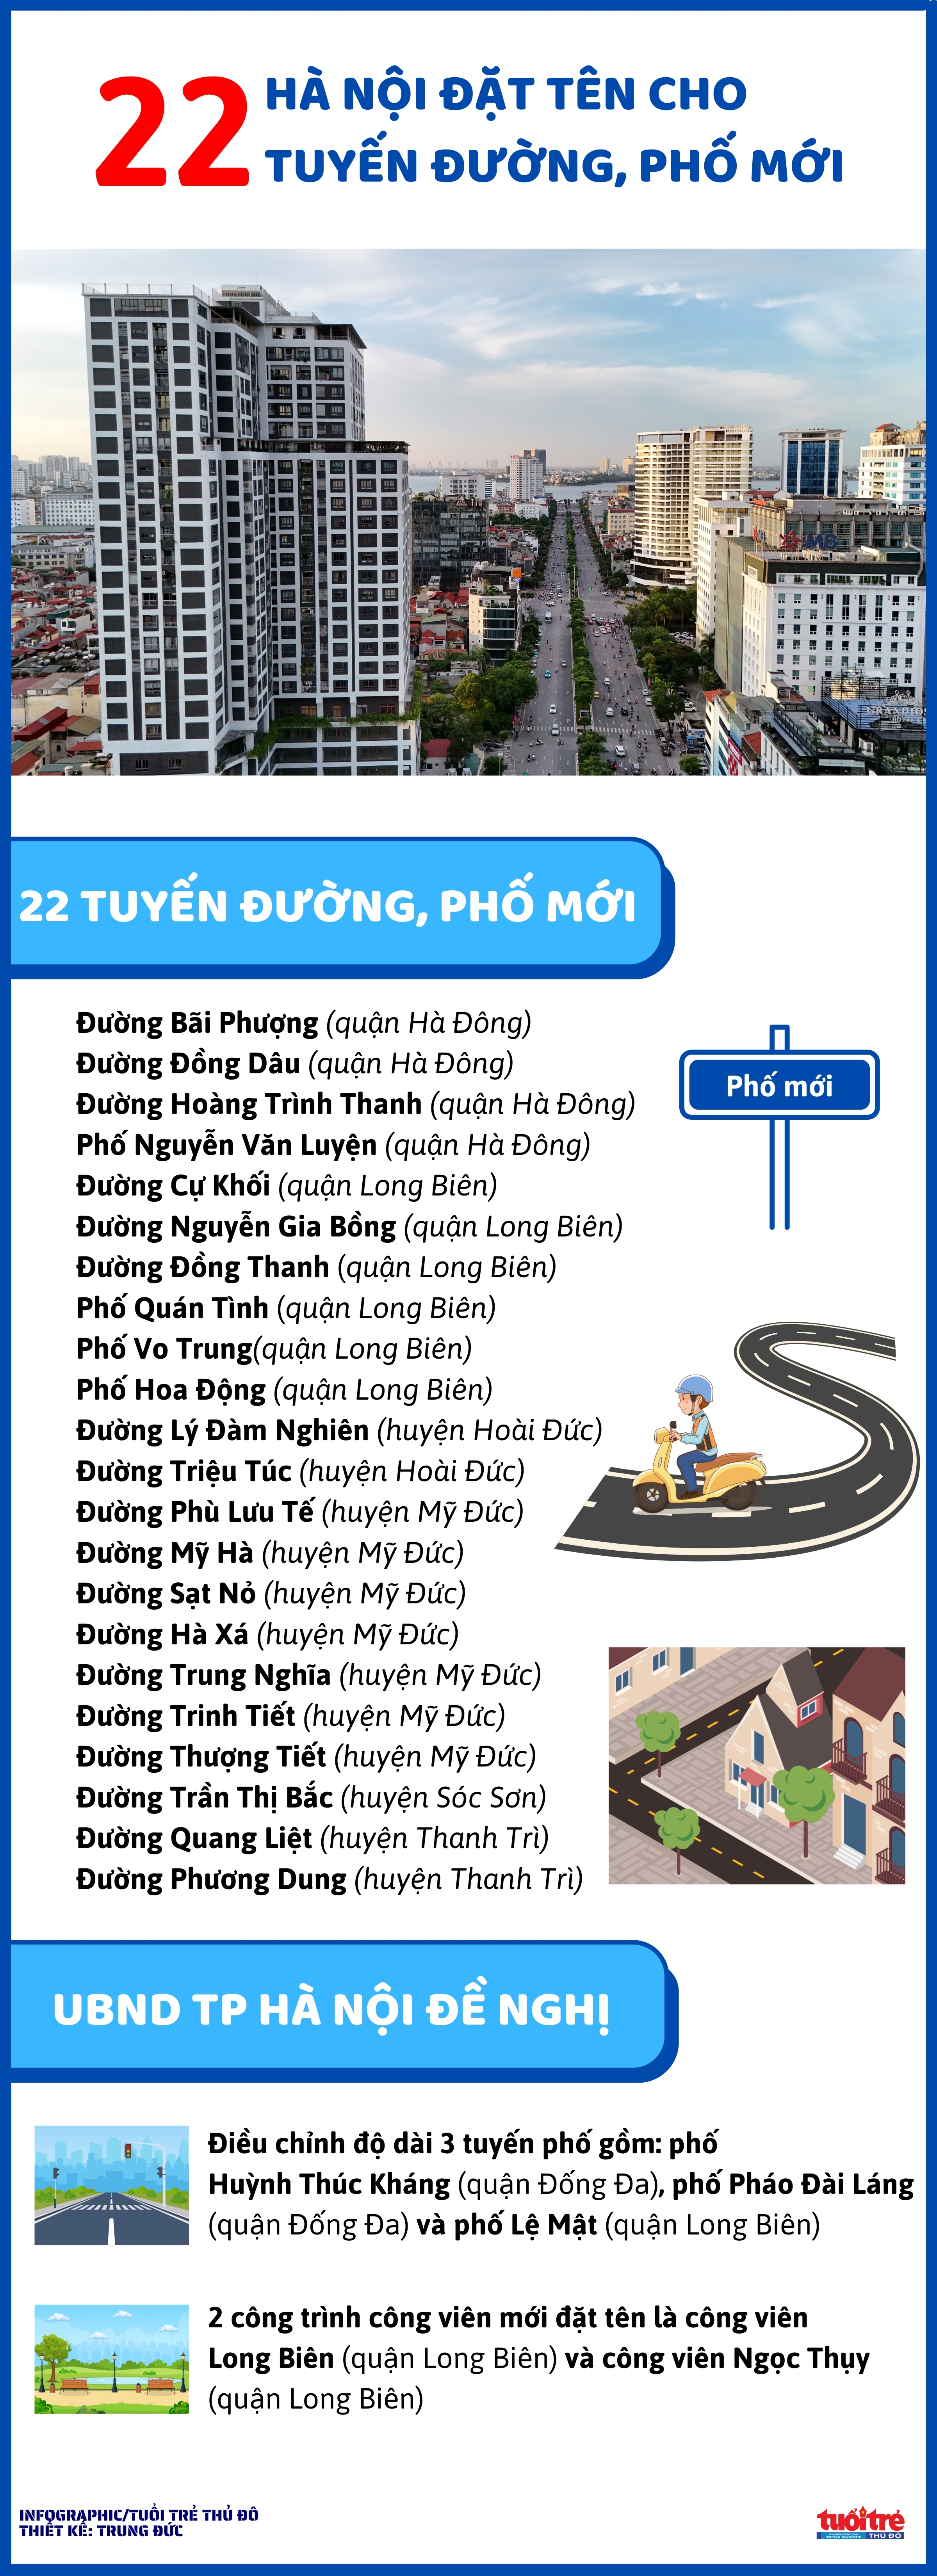 Hà Nội đặt tên cho 22 tuyến đường, phố mới